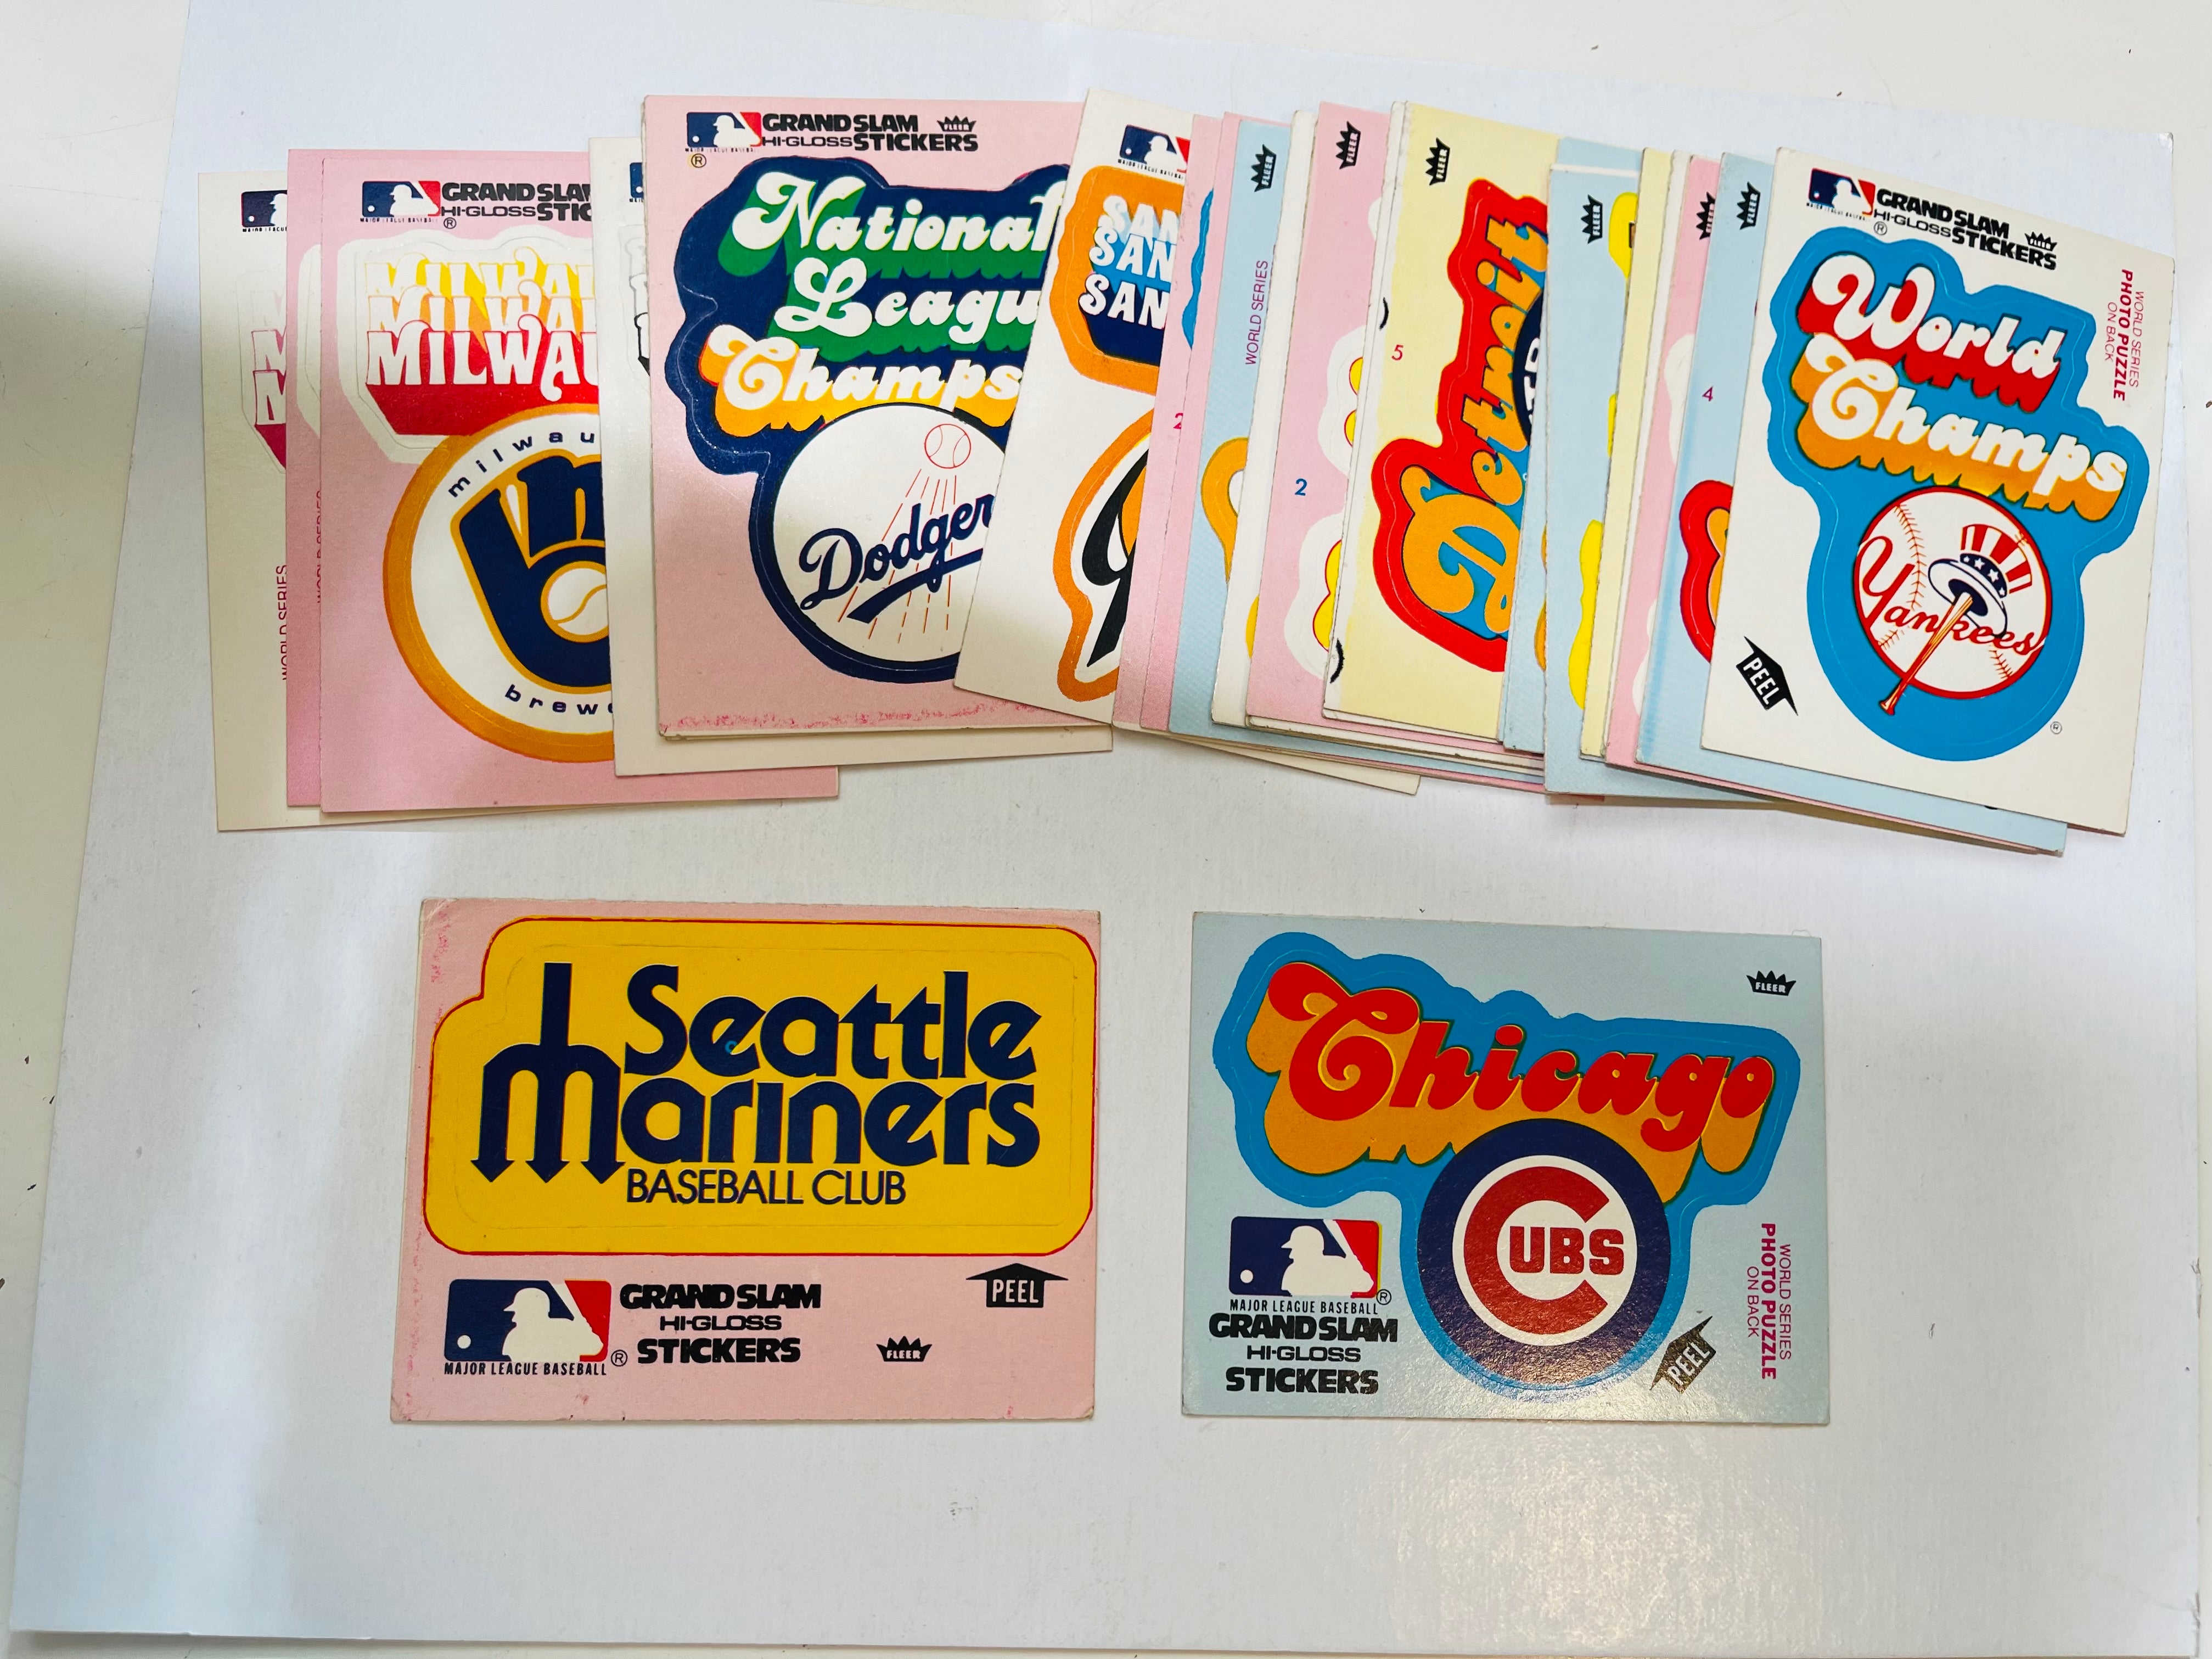 1978 Fleer baseball grand slam Hi-gloss team logos insert stickers set